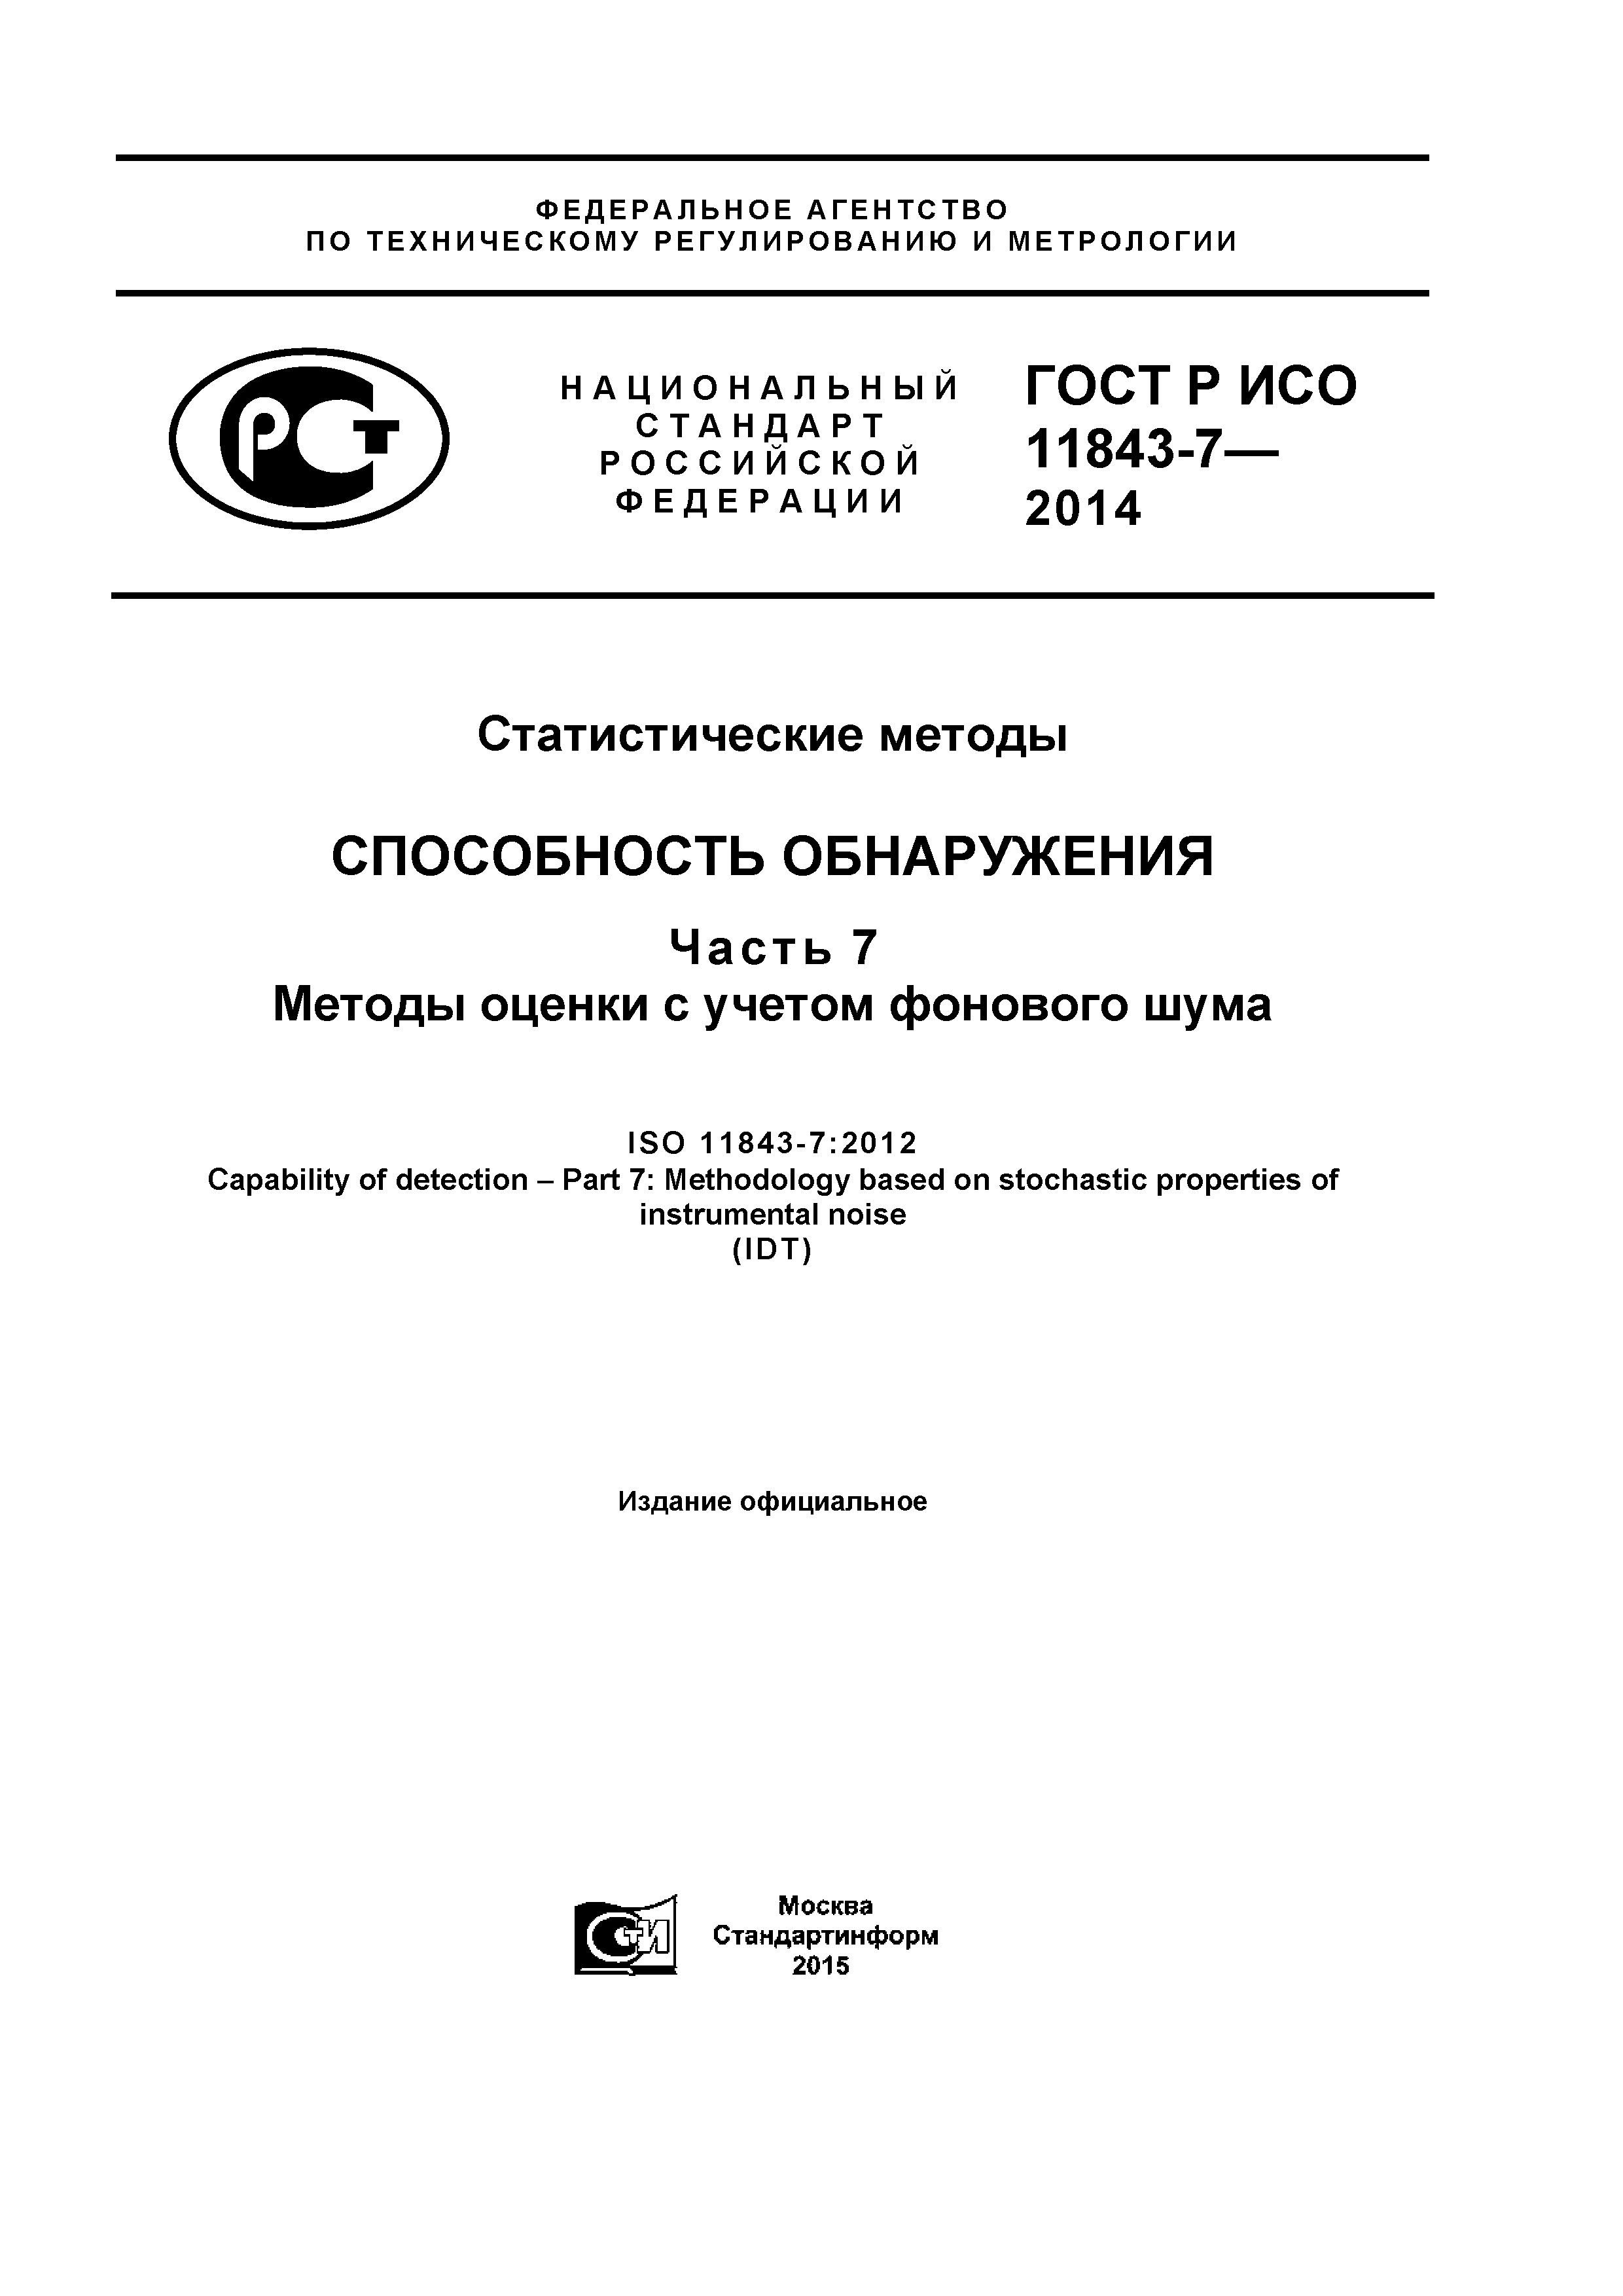 ГОСТ Р ИСО 11843-7-2014